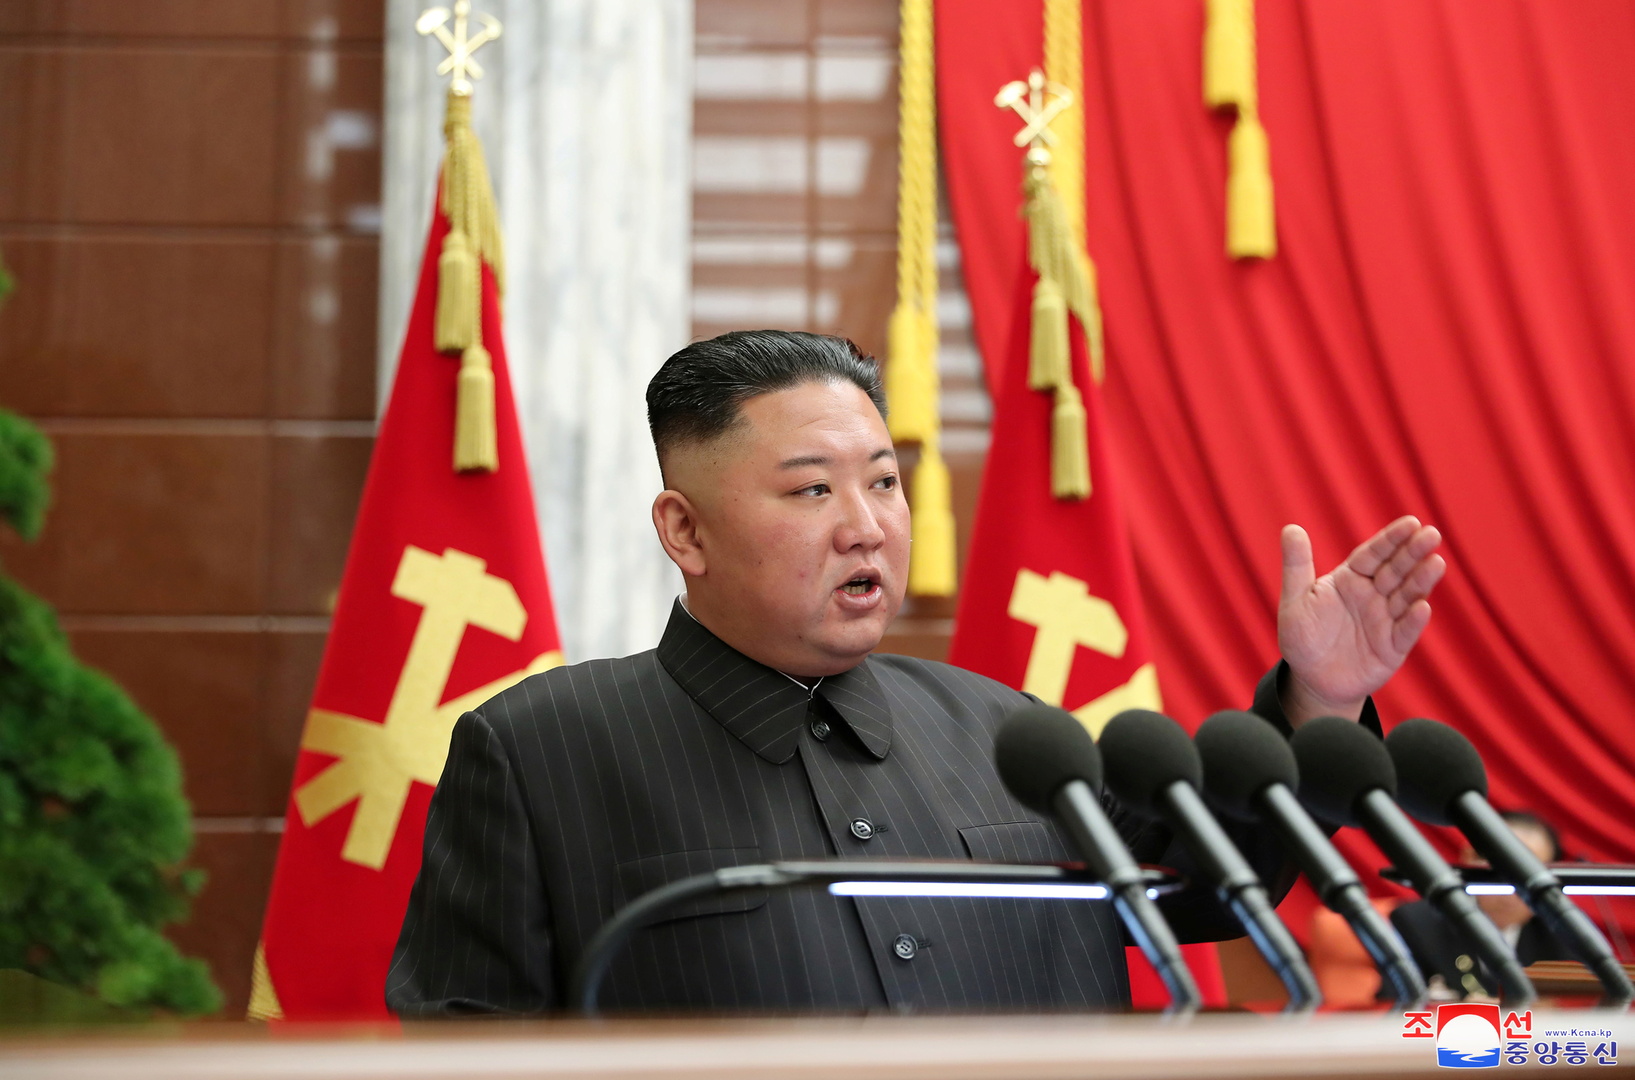 رئيس الوزراء الكوري الشمالي ينجو من محاولة إقالة بسبب أزمة كورونا